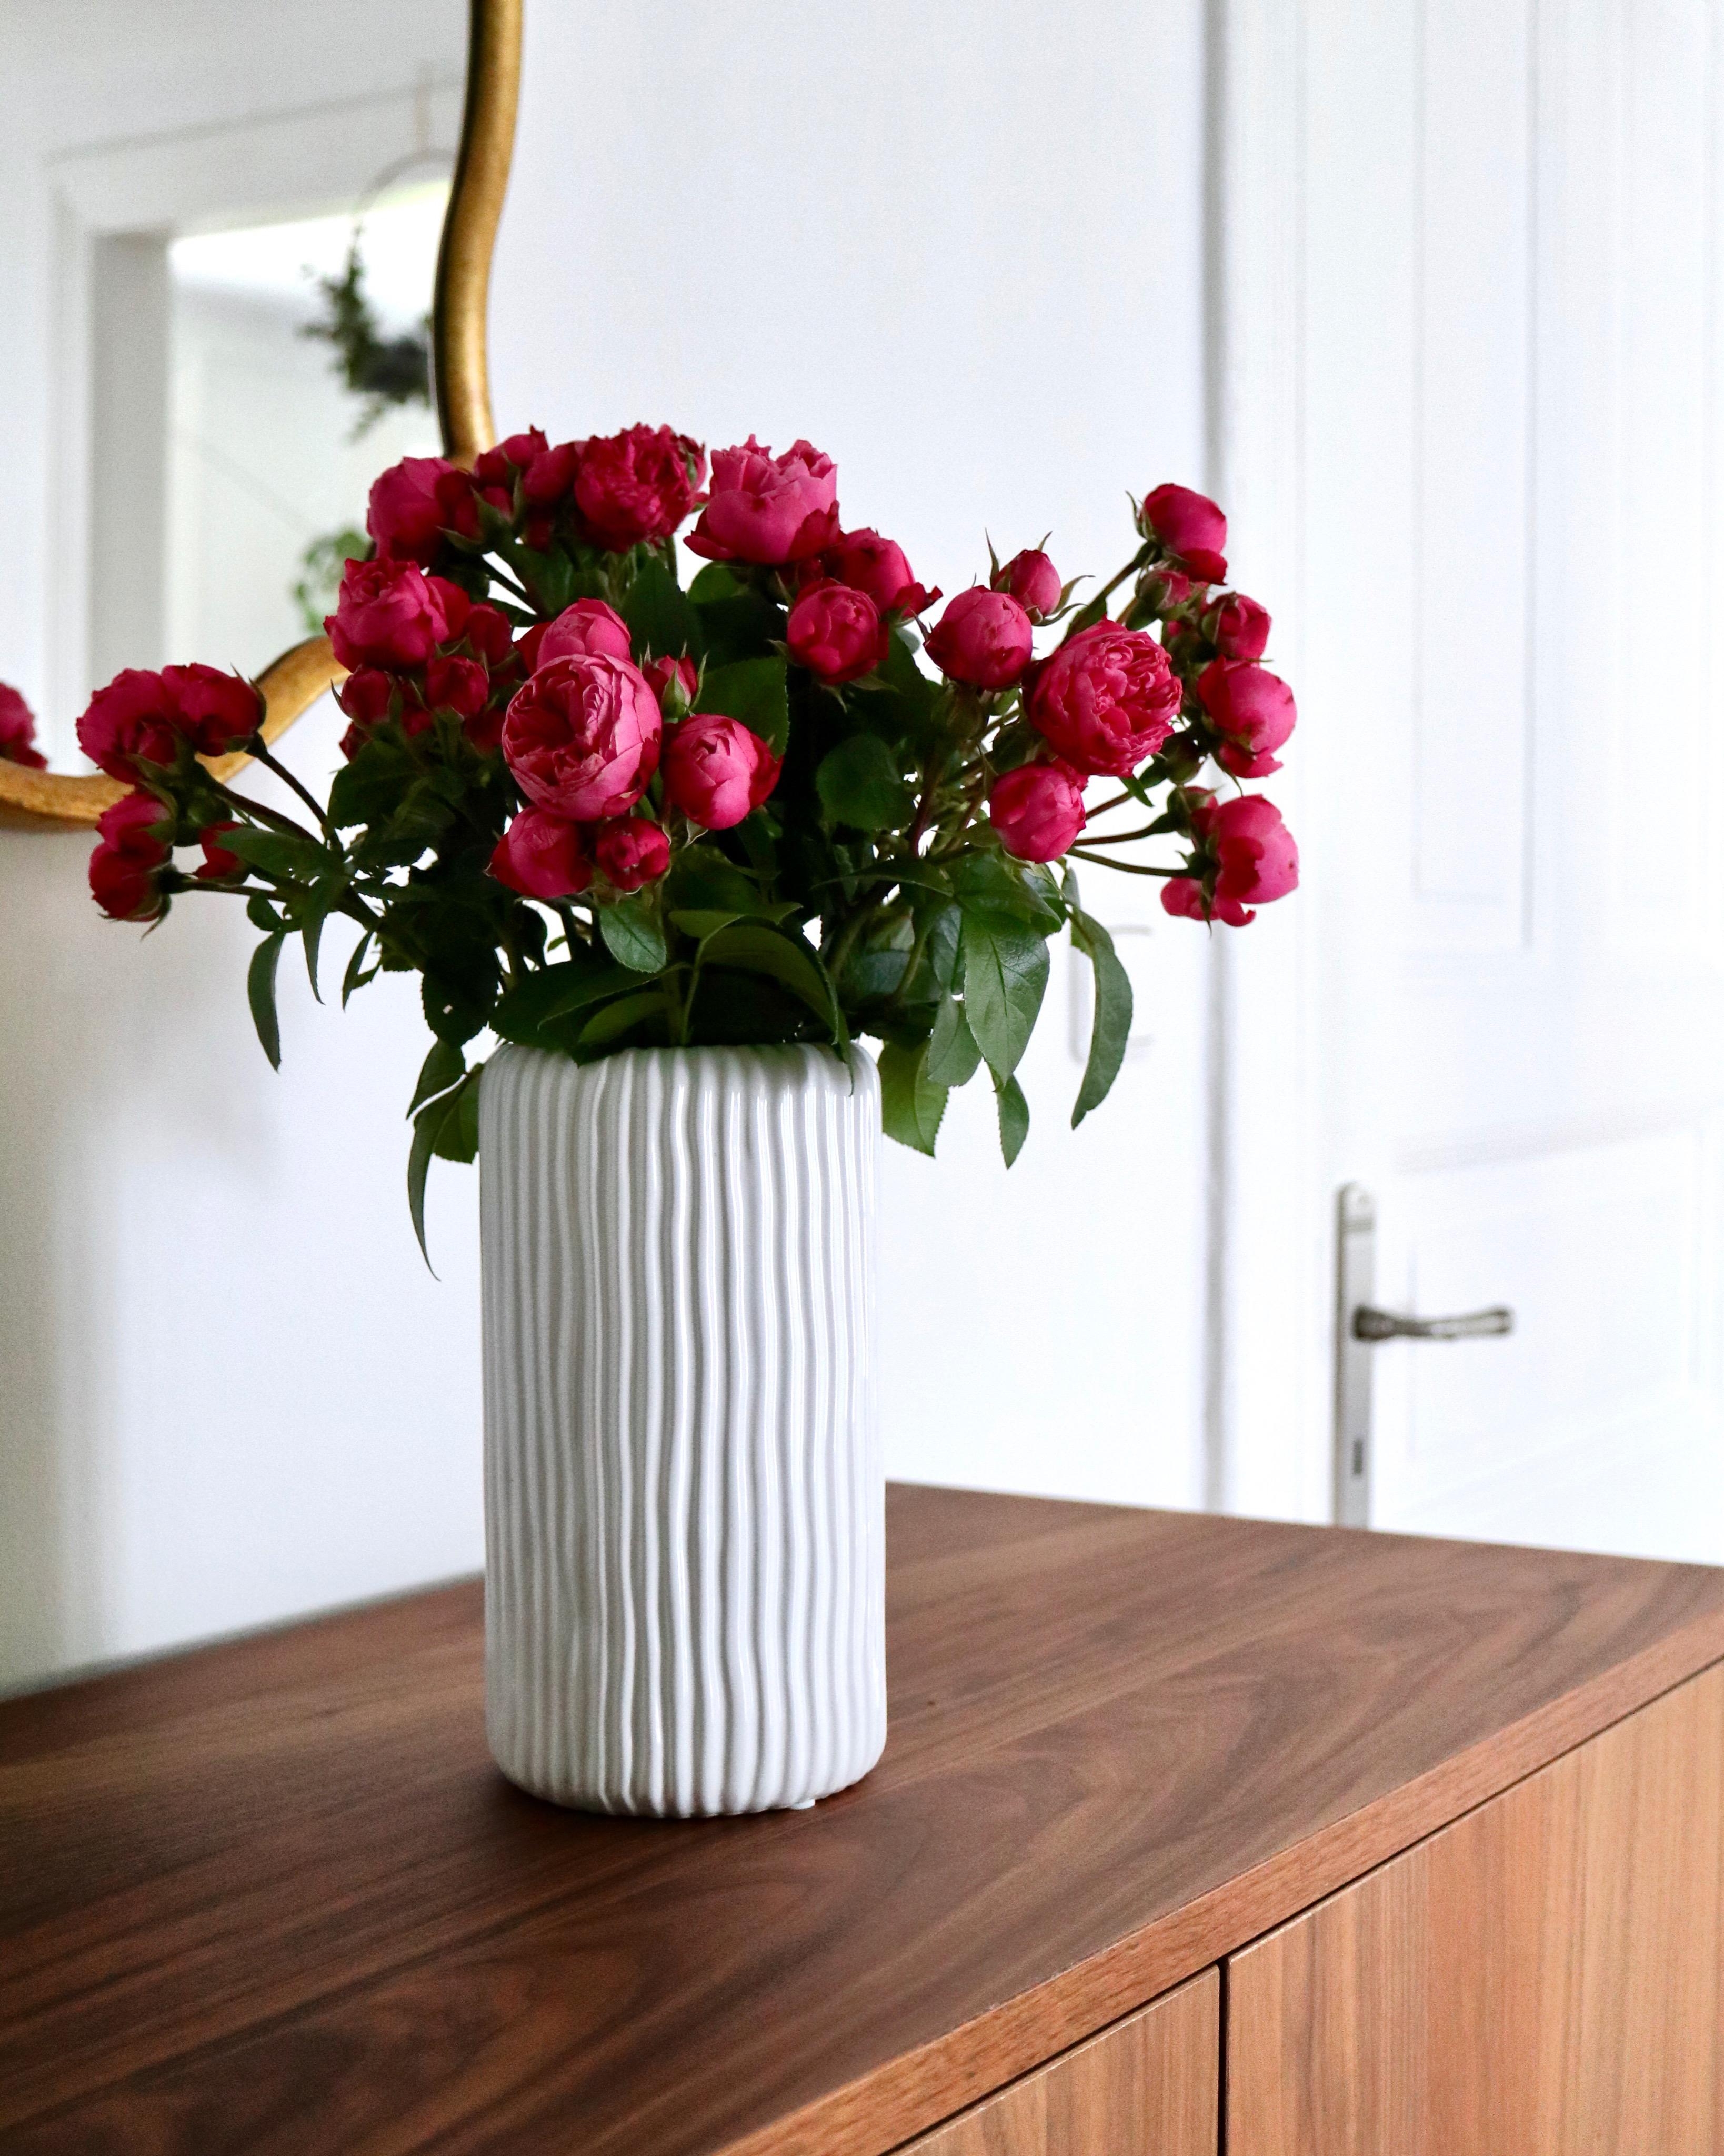 Happy #freshflowerfriday! Habt ein feines Wochenende! #rosen #pink #vase